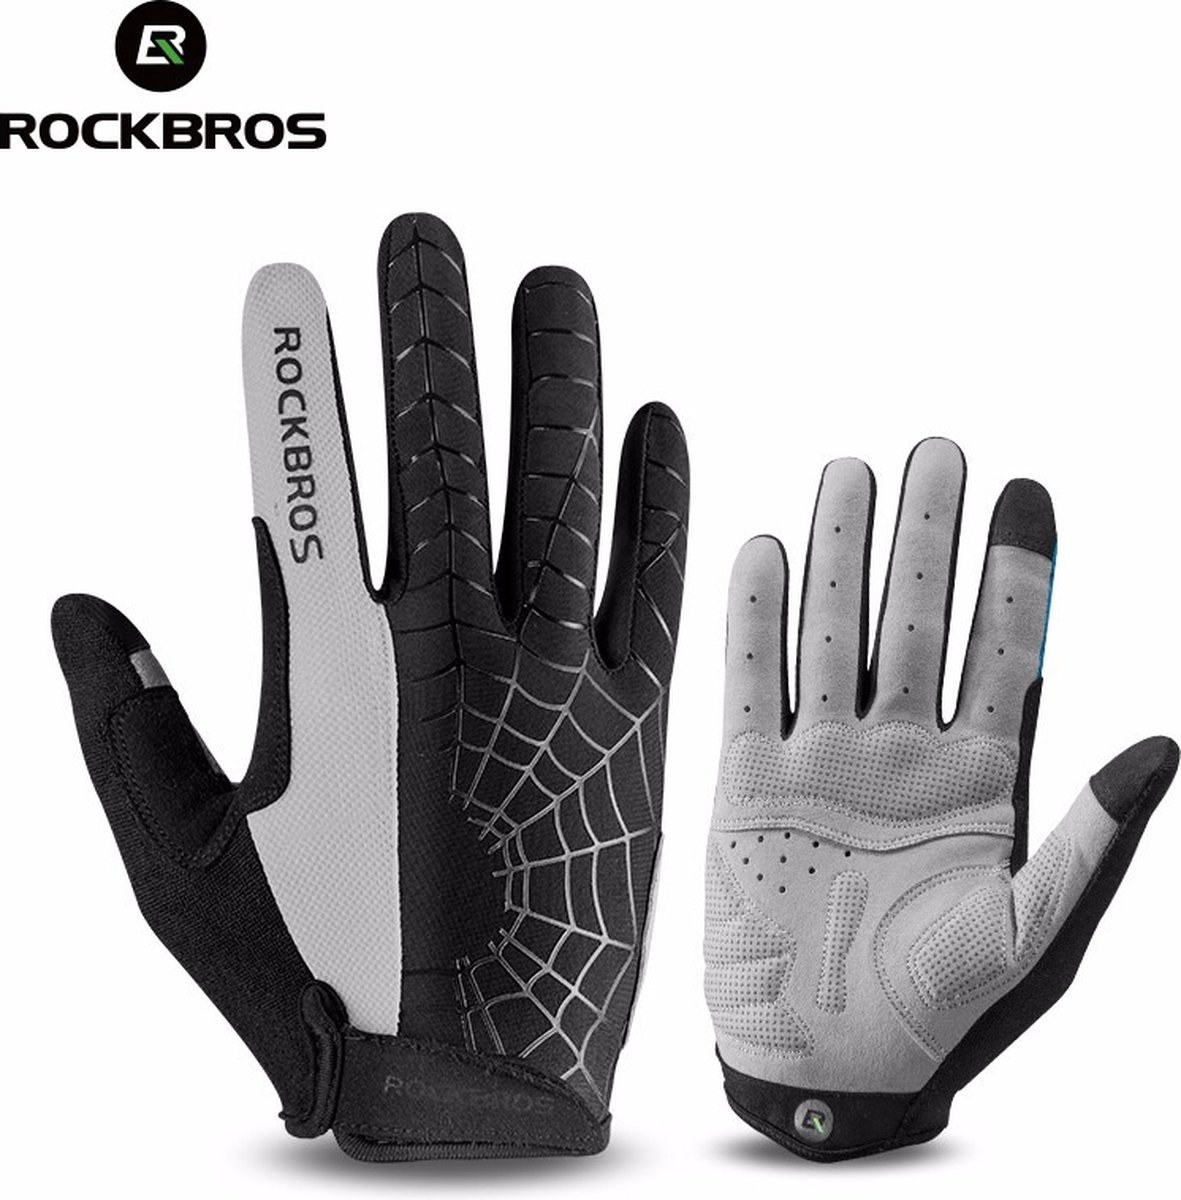 Rockbros fiets handschoenen met lange vingers S109 - M - GRIJS